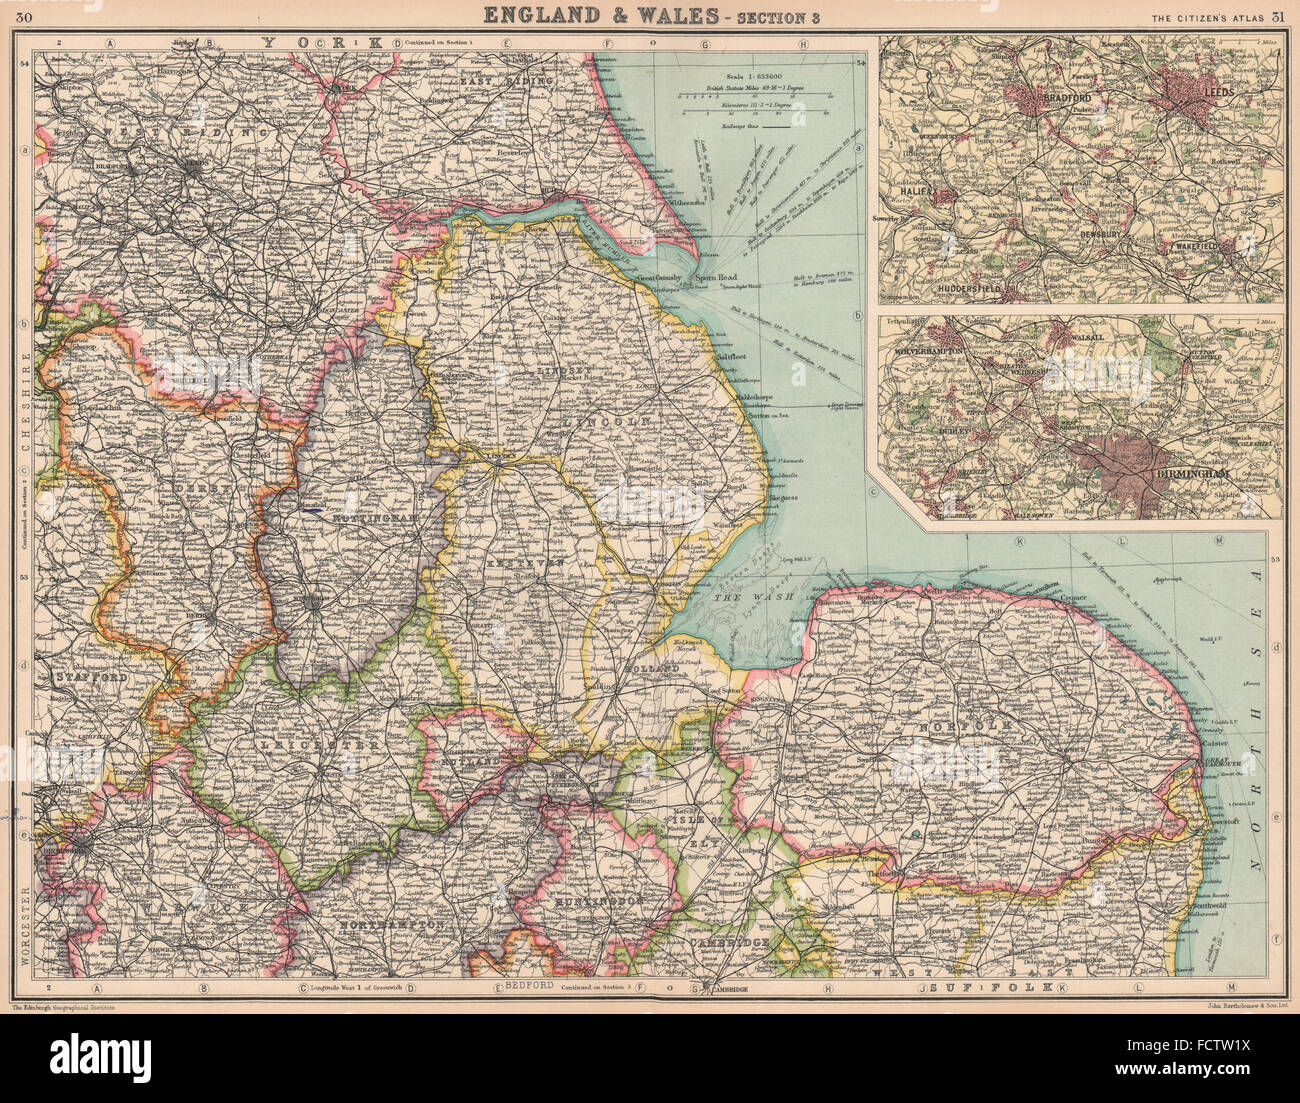 El este de Inglaterra: 'Isla de Ely' se muestra como un condado independiente. Kesteven &c, 1924 mapa Foto de stock